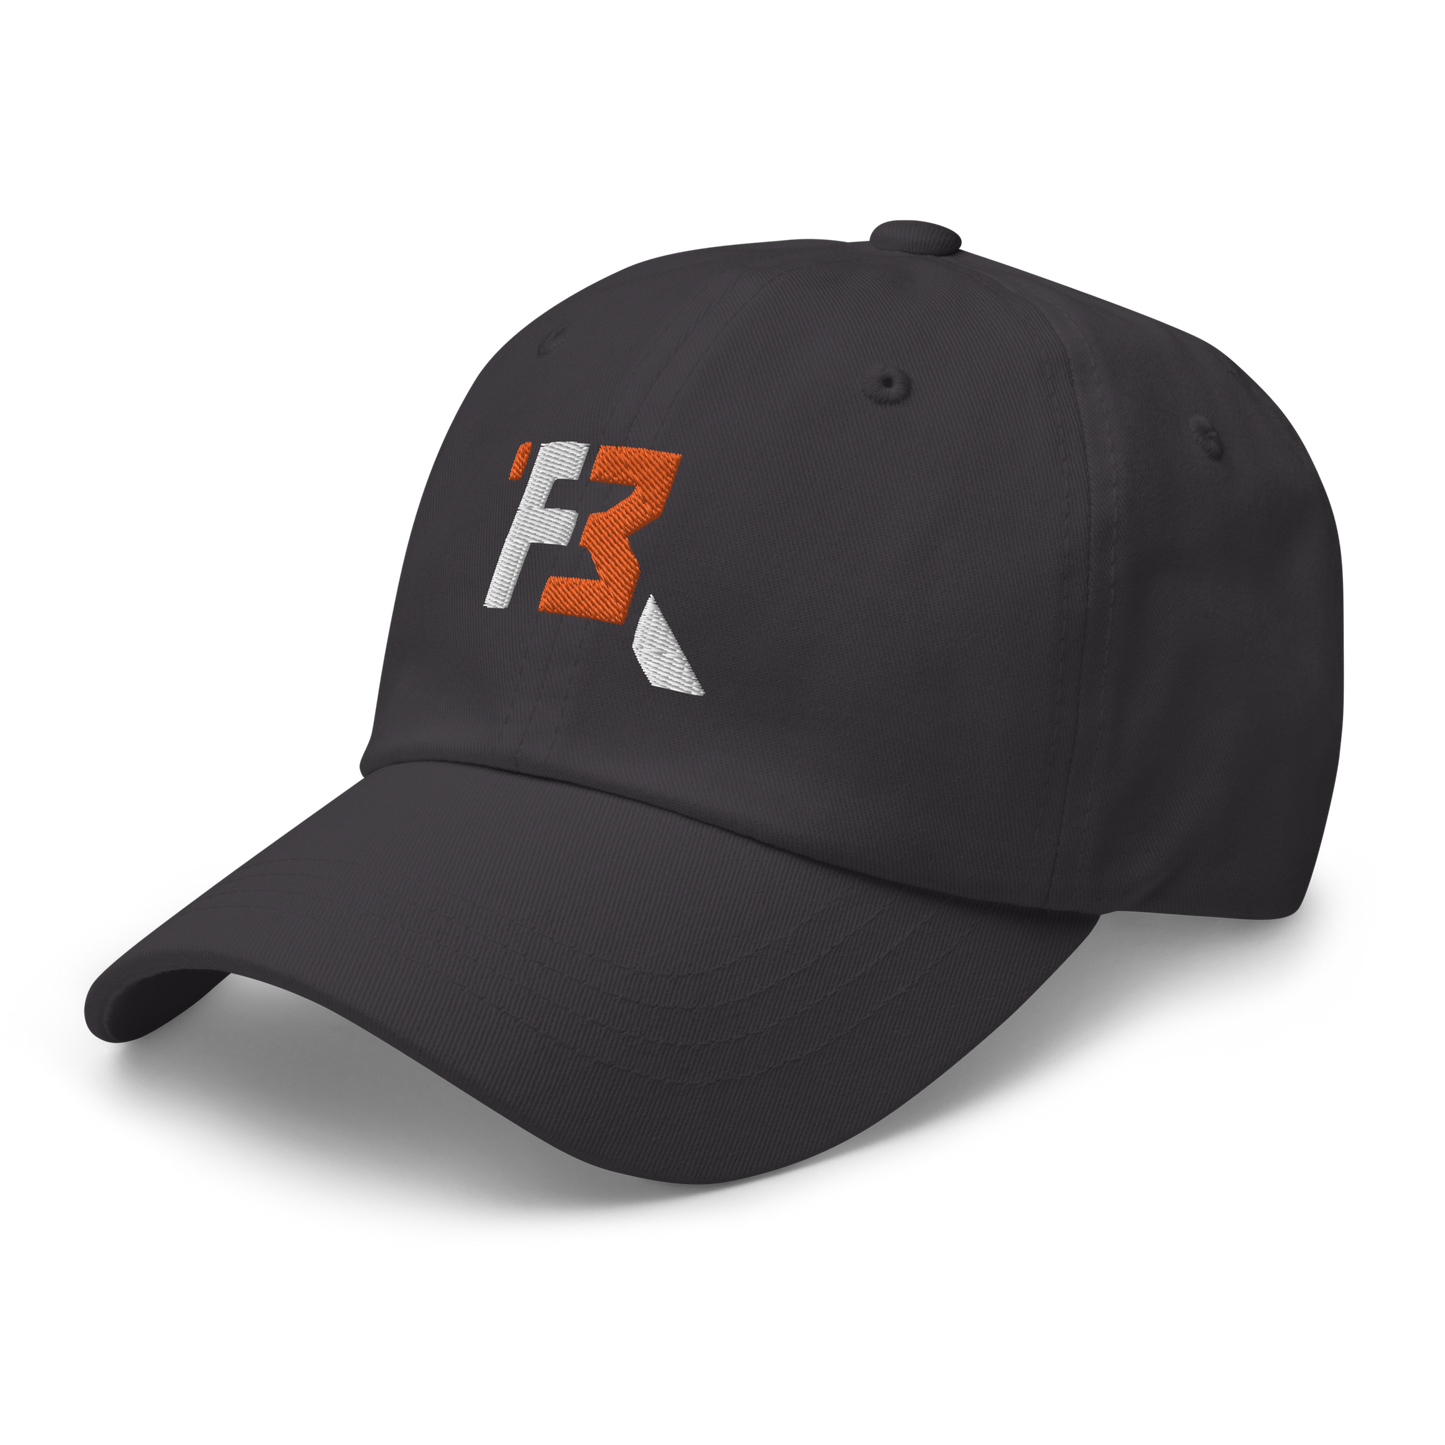 RIVALDO FAIRWEATHER PERFORMANCE CAP